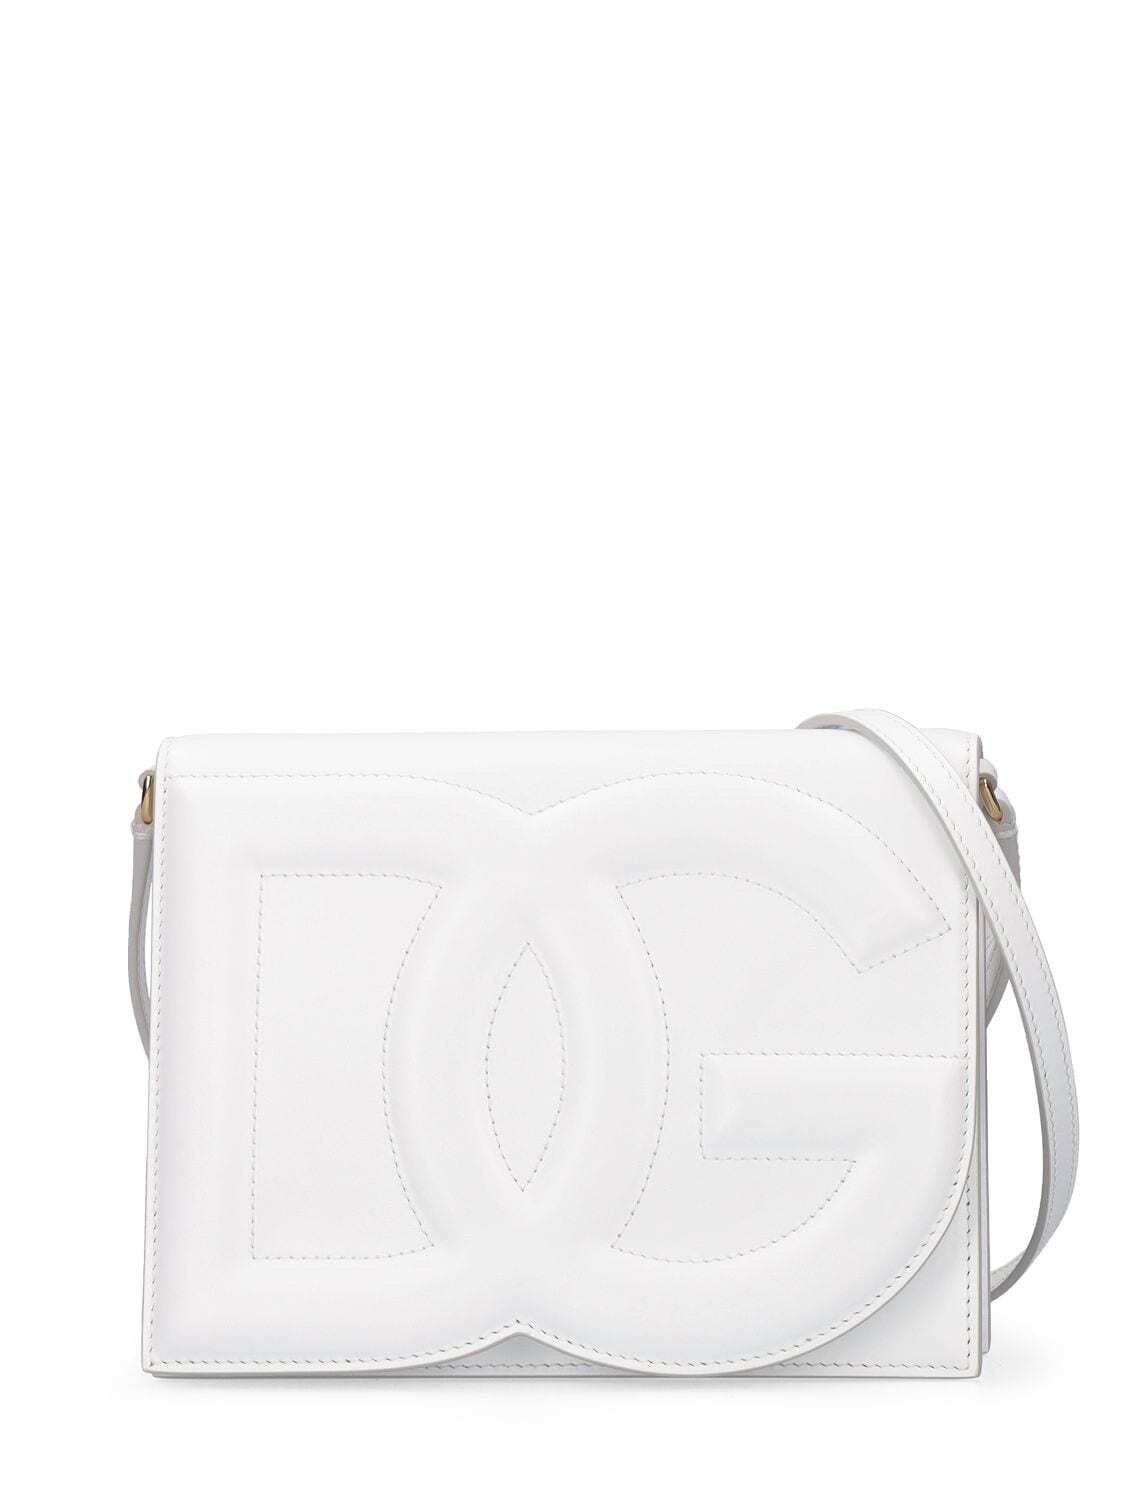 DOLCE & GABBANA Dg Logo Leather Shoulder Bag in white